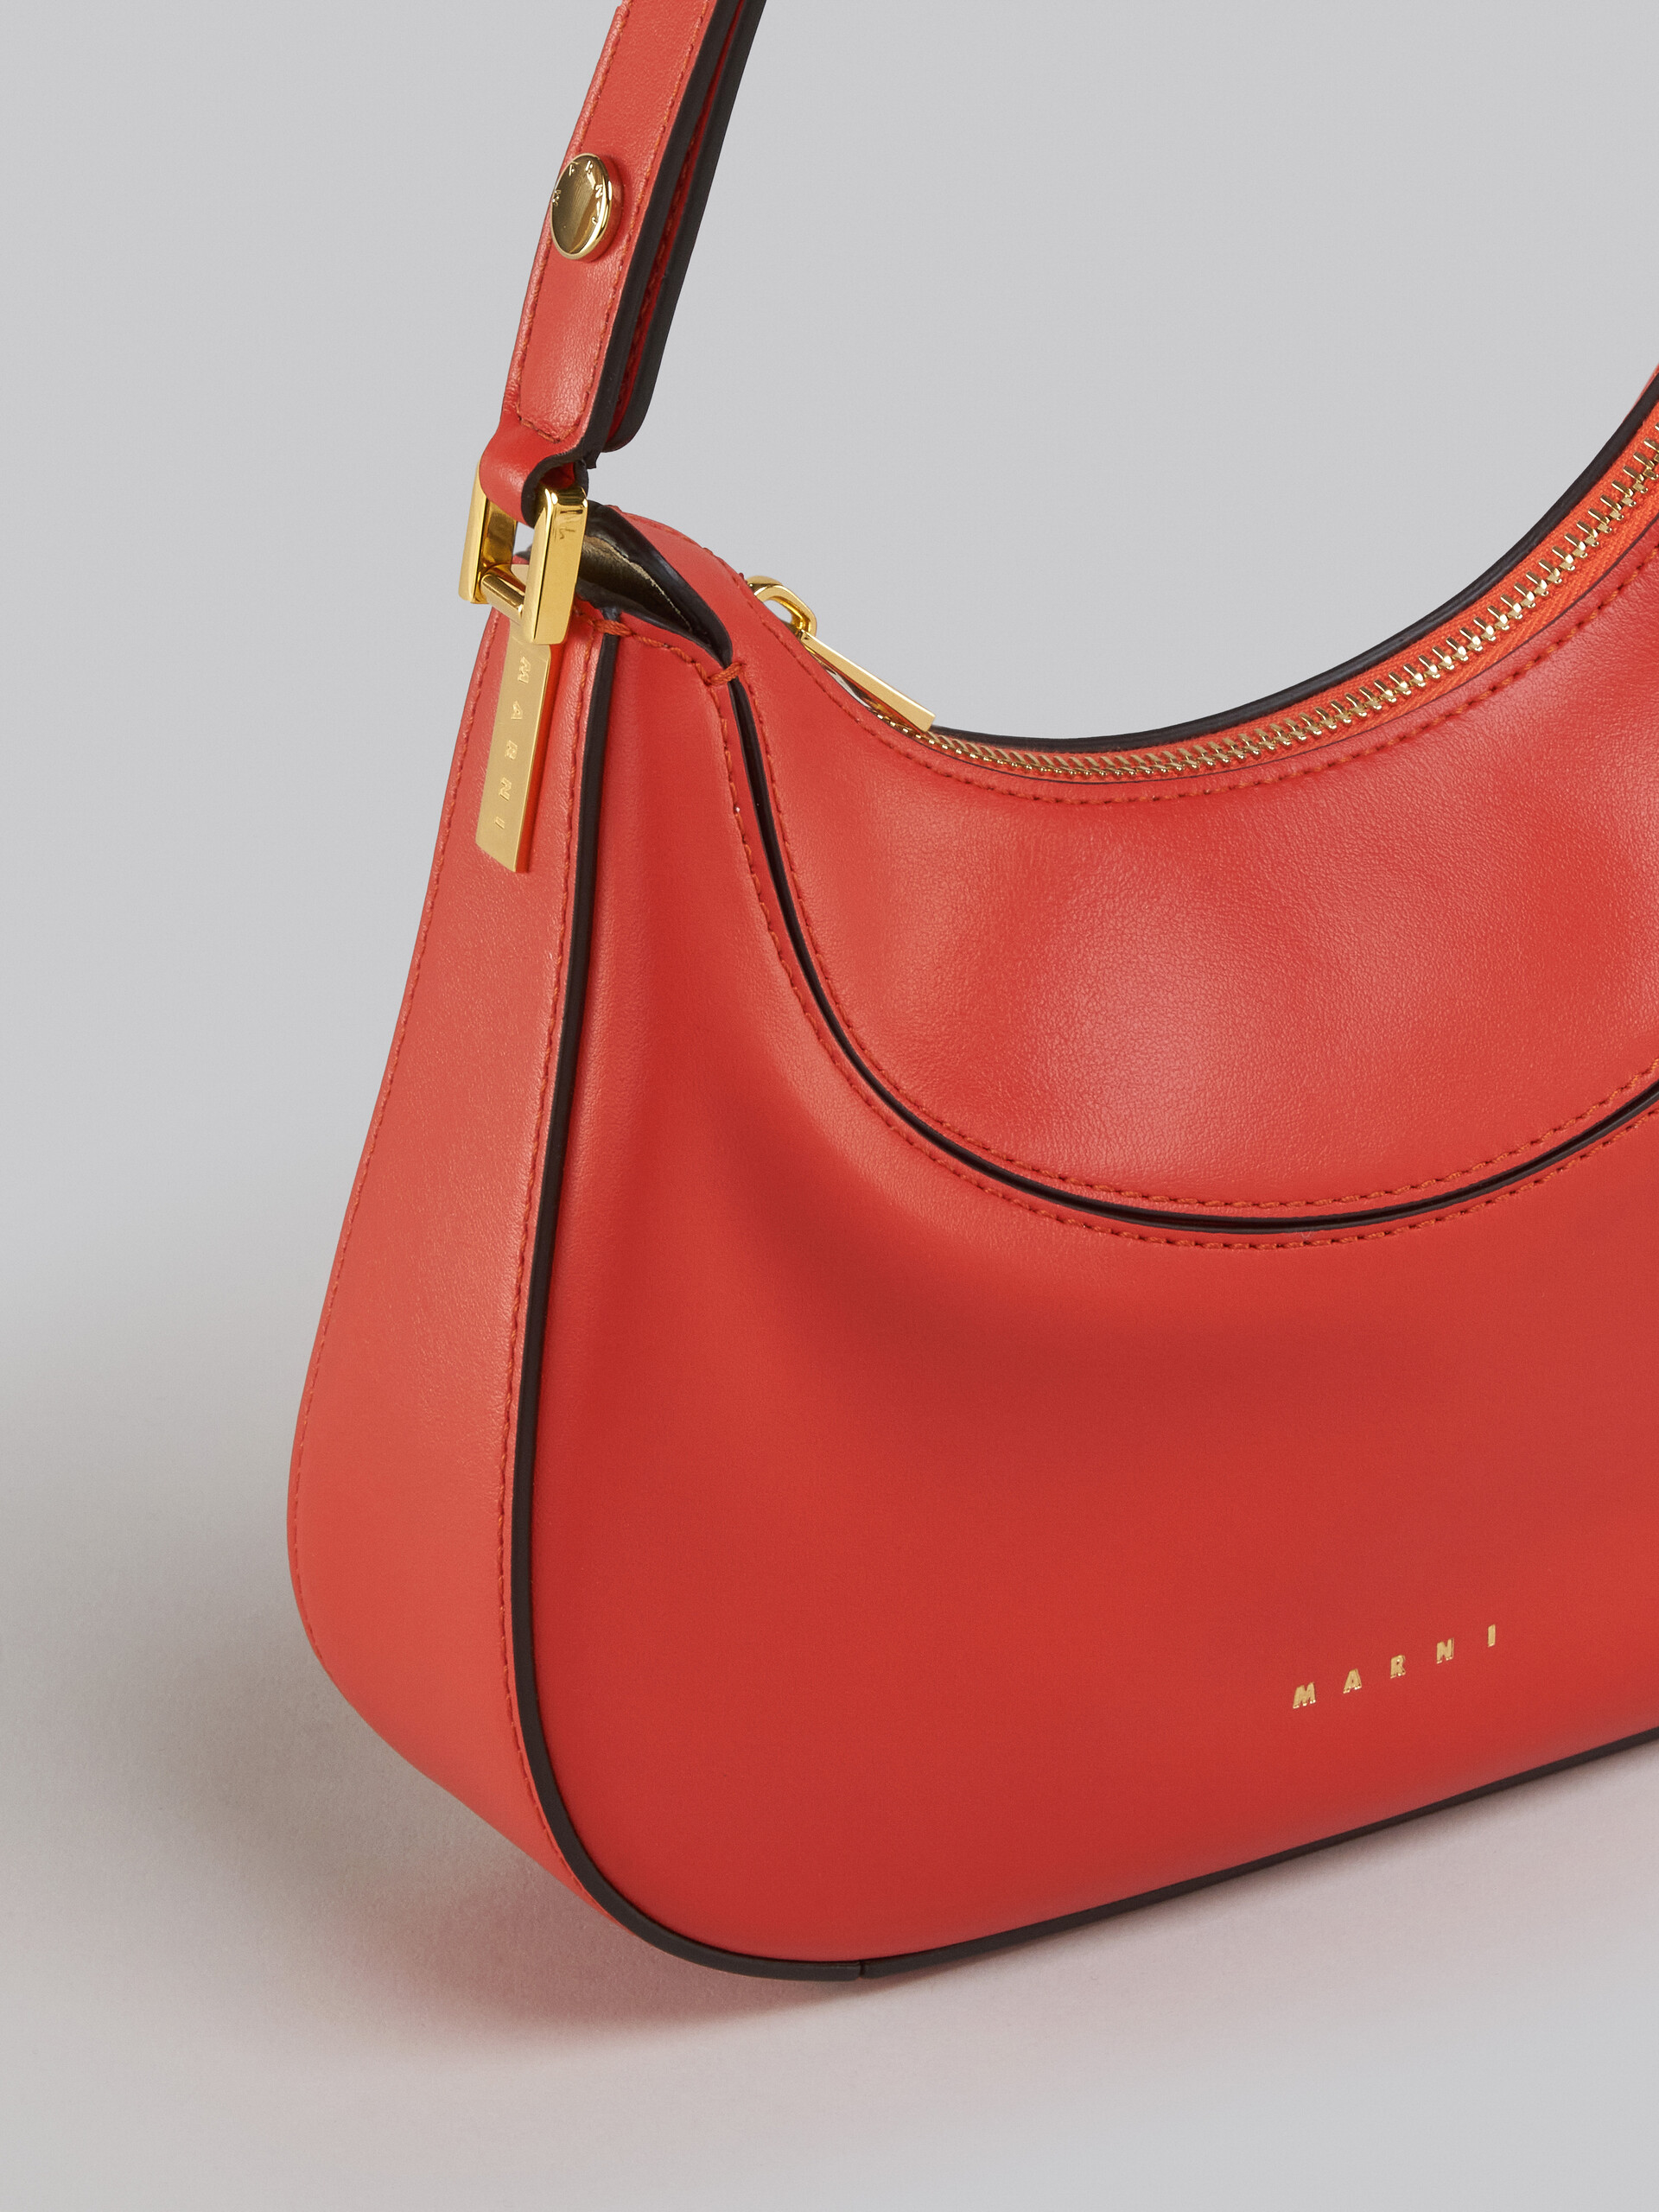 Milano Mini Bag in orange leather - Handbag - Image 5